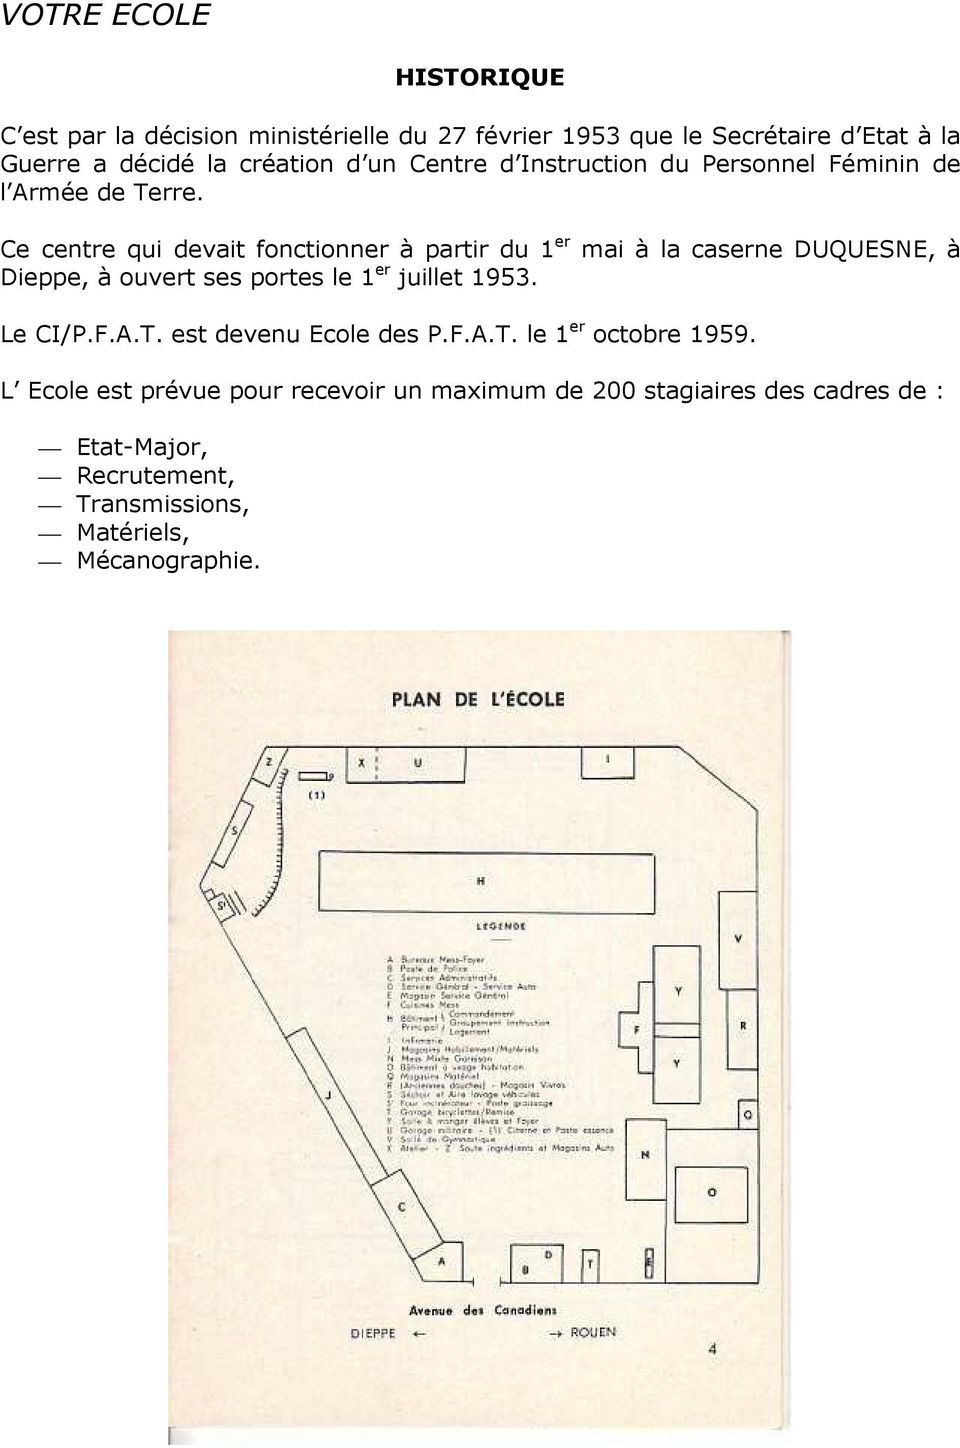 Ce centre qui devait fonctionner à partir du 1 er mai à la caserne DUQUESNE, à Dieppe, à ouvert ses portes le 1 er juillet 1953.